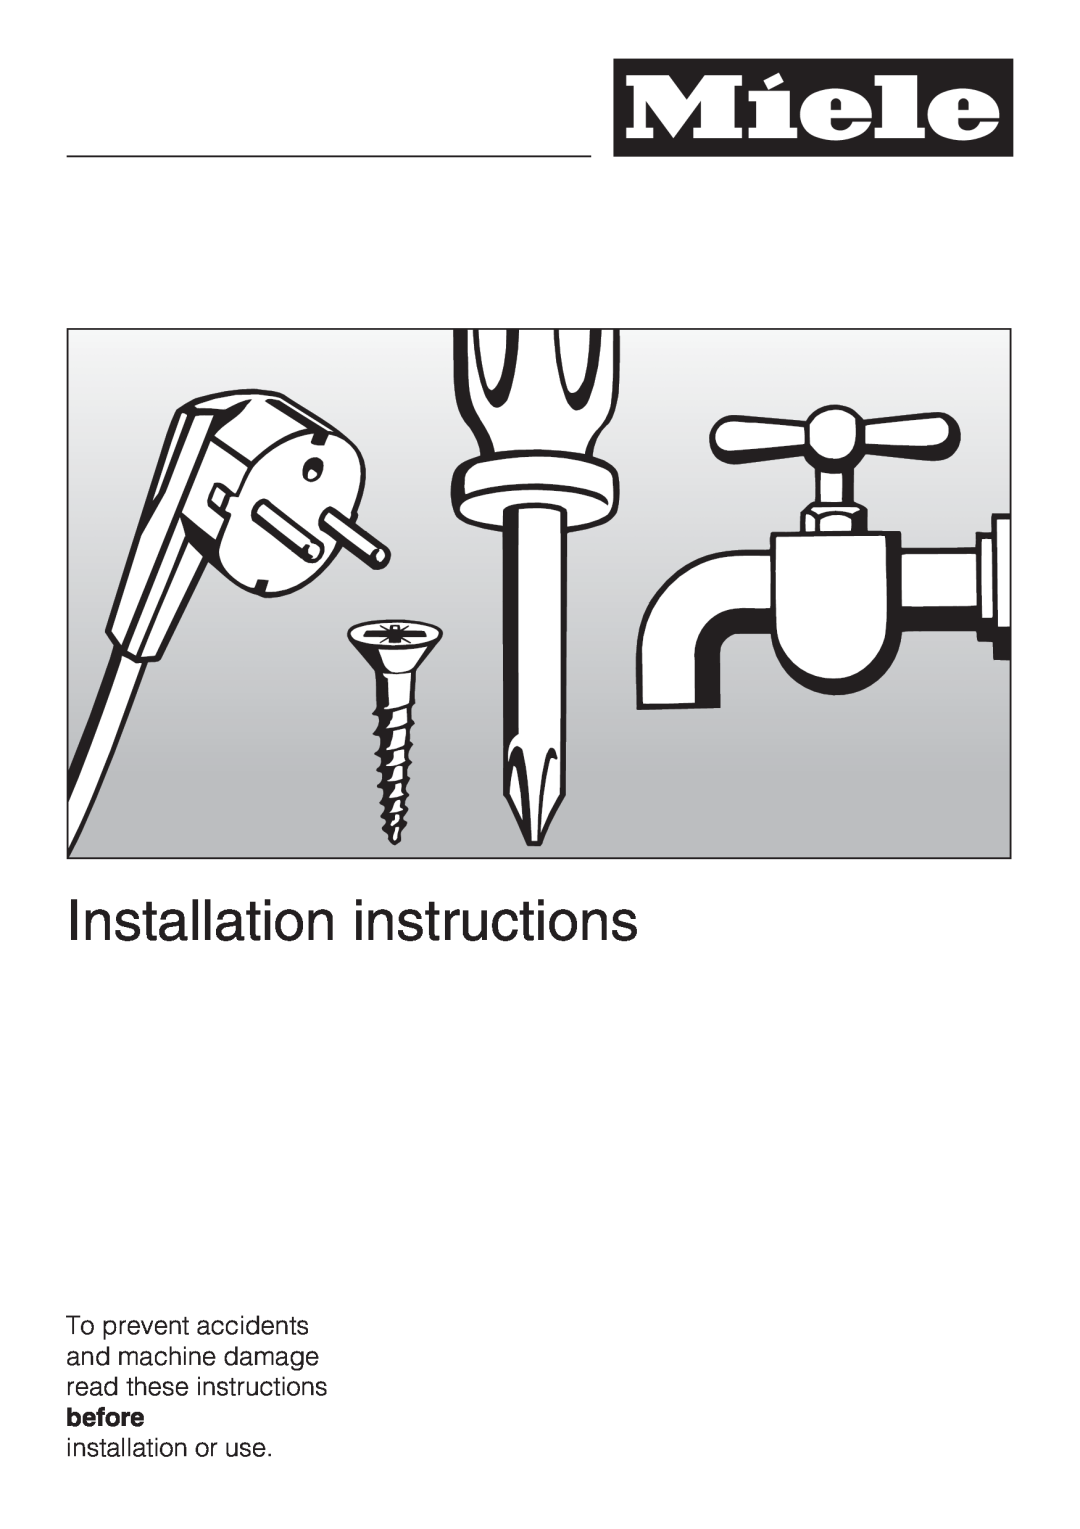 Miele F1901SF, F1801SF, F1911SF, F1811SF installation instructions Installation instructions, installation or use 